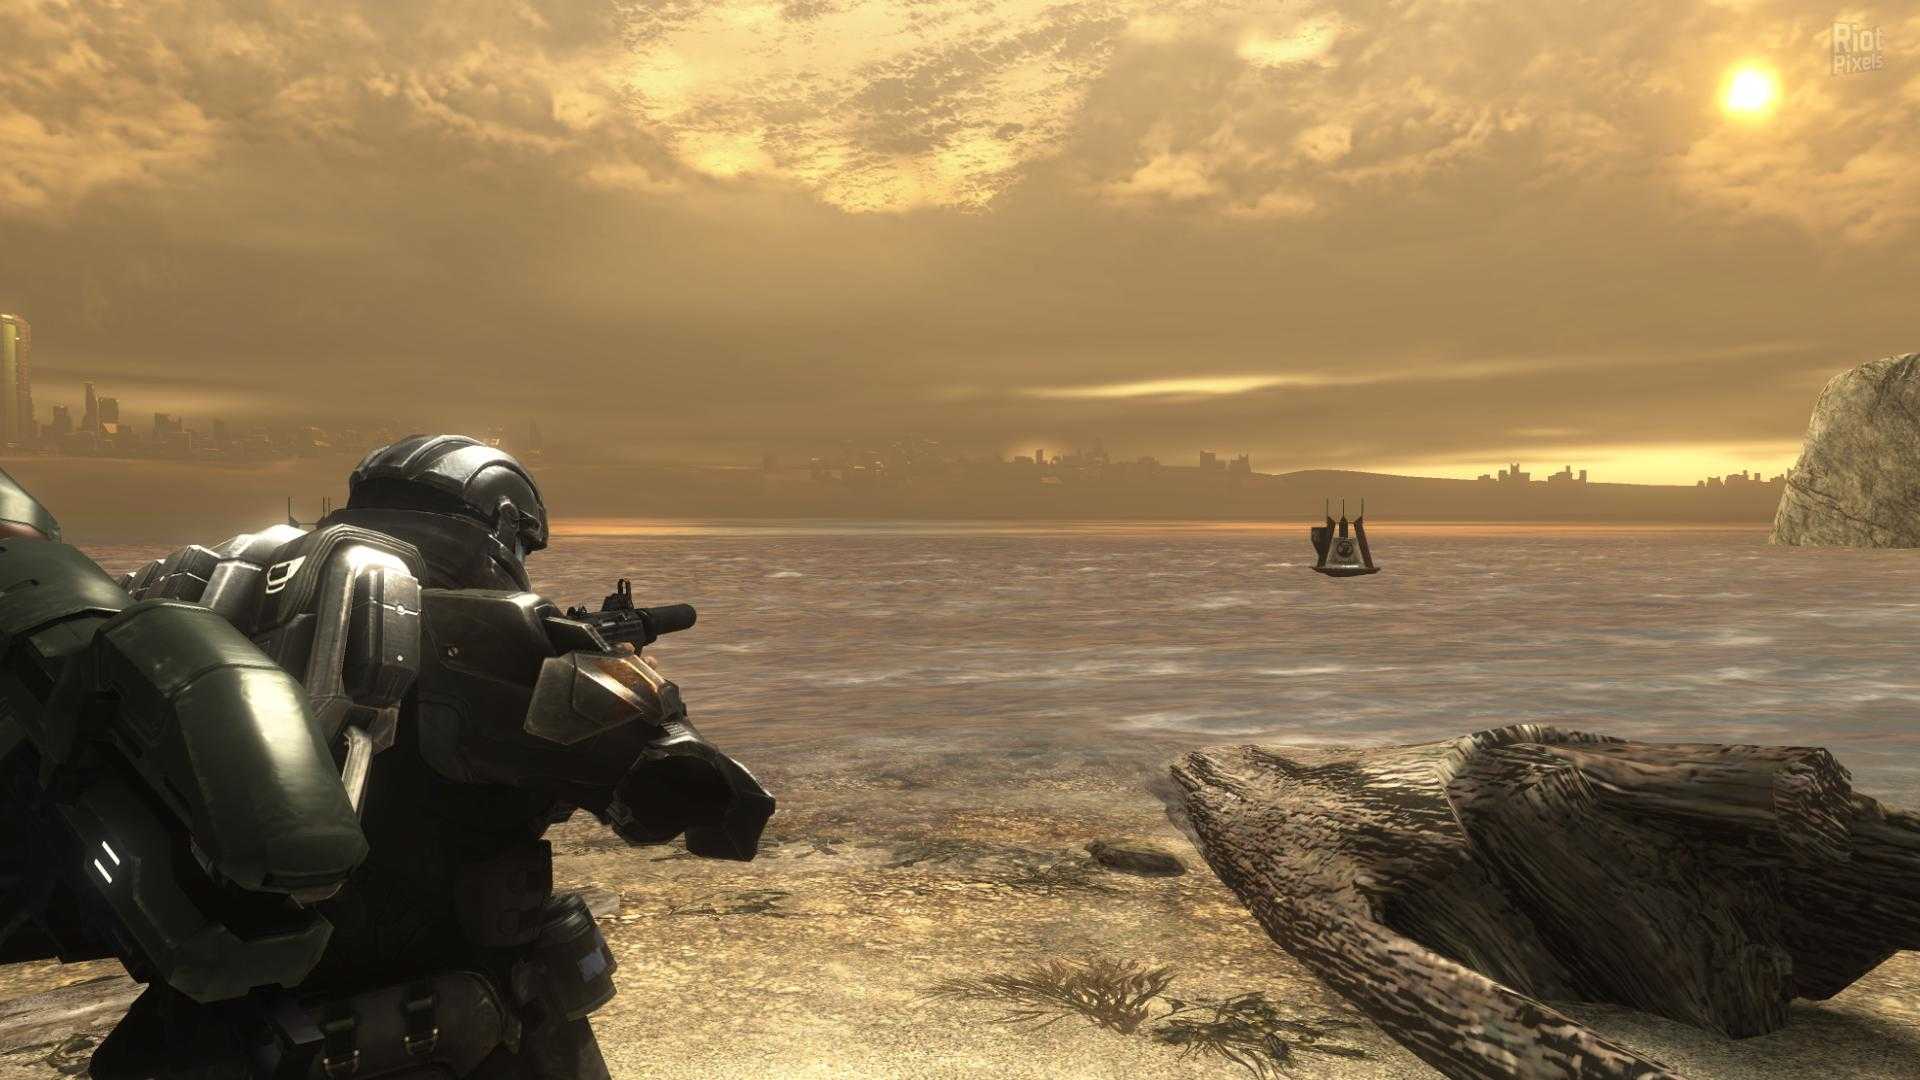 Halo 3: odst – скриншоты и подробности